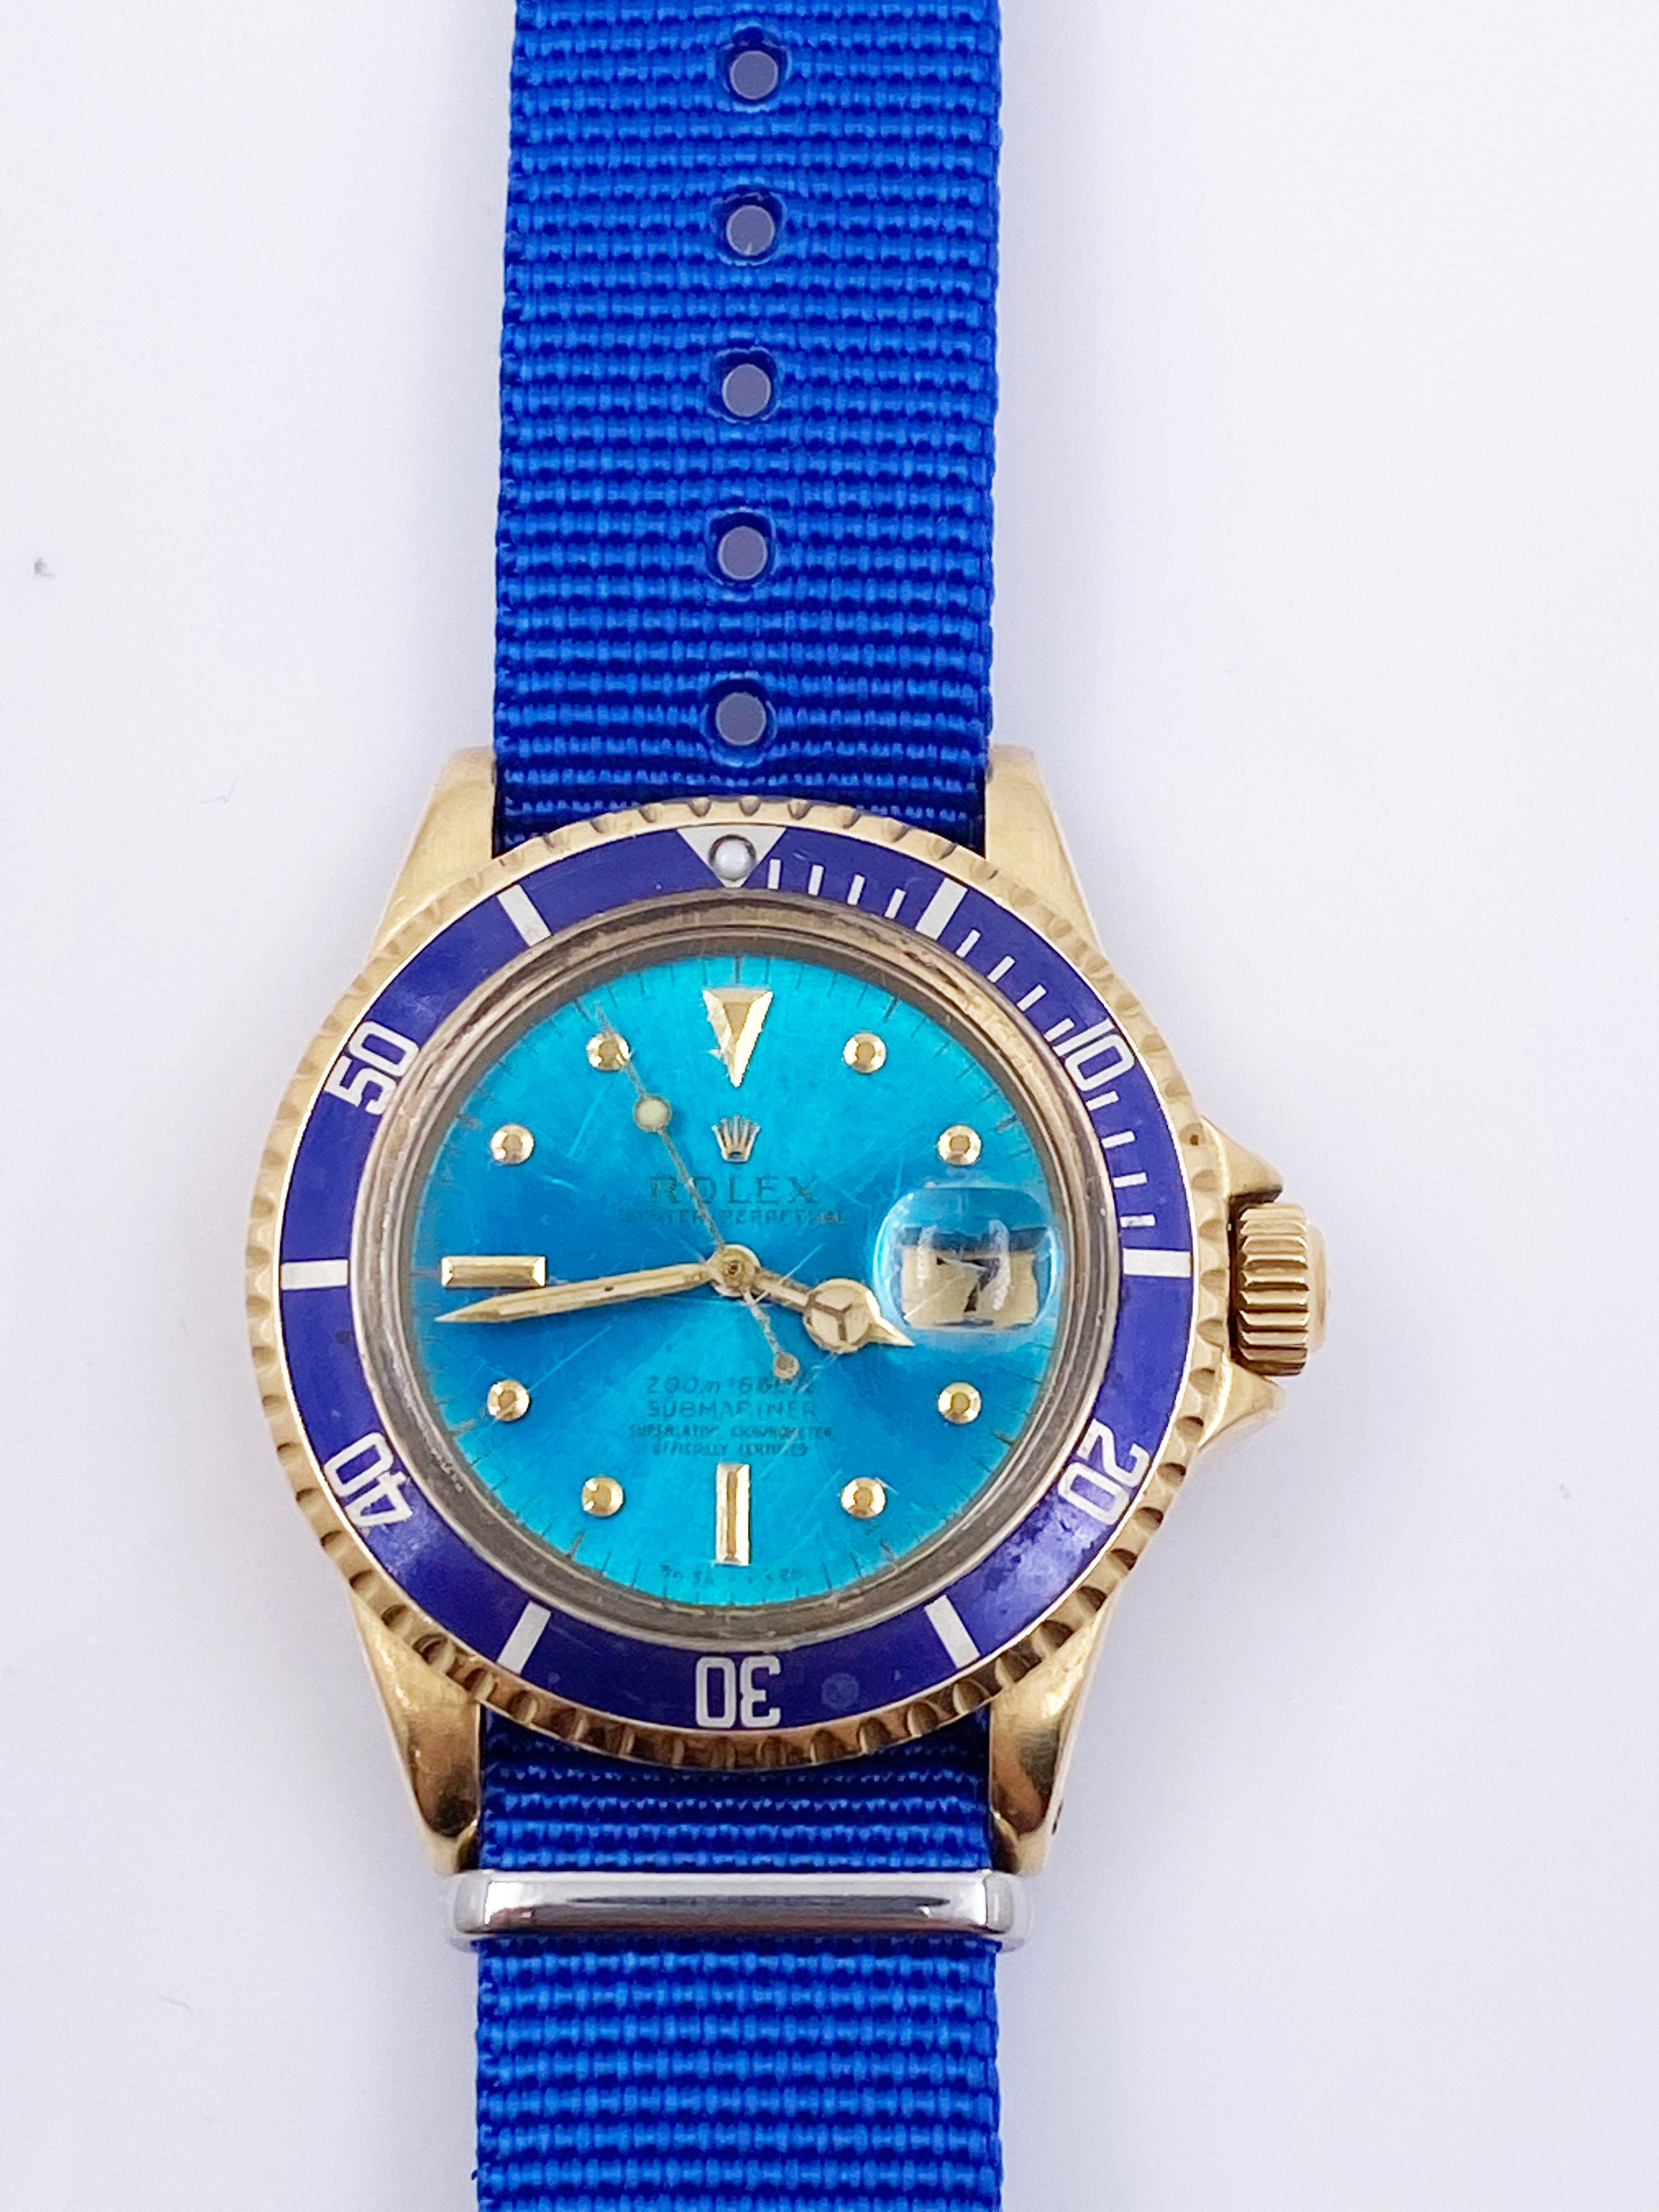 Numéro de style : 1680

 

Série : 5835***



Année:1979

 

Modèle : Submariner 

 

Matériau du boîtier : or jaune 18K



Bande : Bracelet Nato bleu personnalisé

 

Lunette :  Bleu

 

Cadran : Cadran NIPPLE TROPICAL - Face bleue

 

: Acrylique